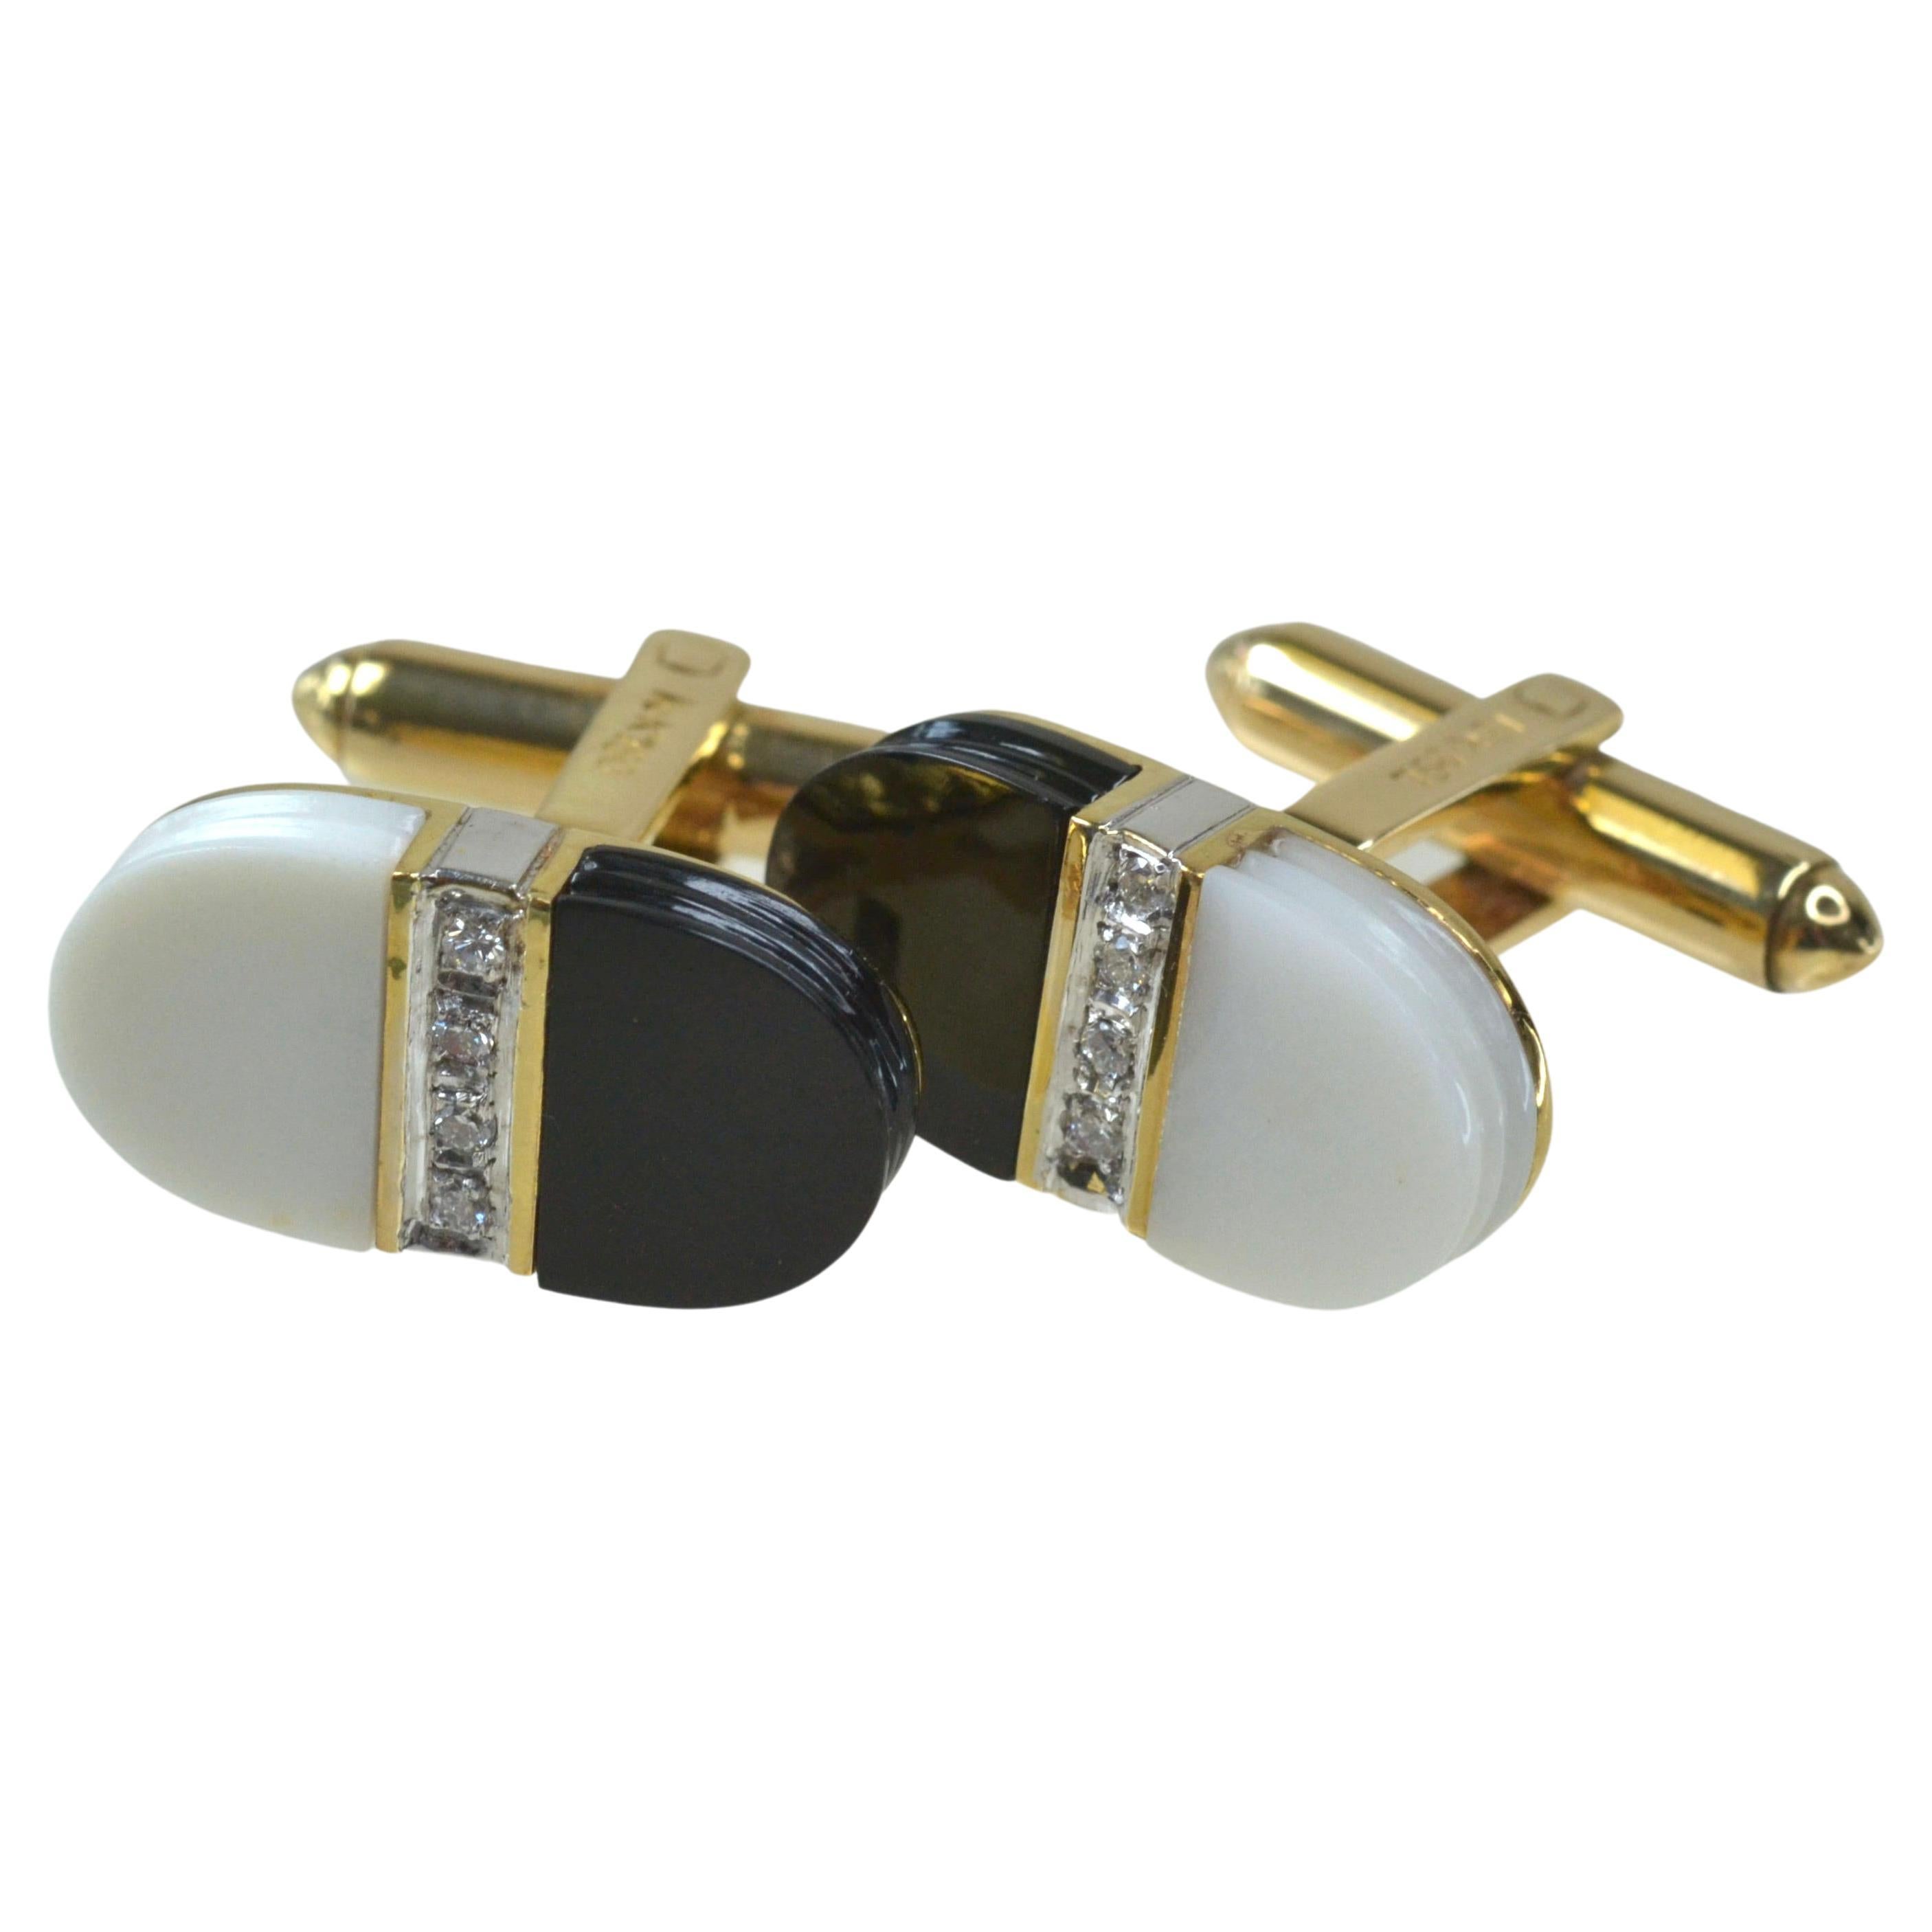 Manschettenknöpfe aus 18 Karat Gold, schwarzem und weißem Onyx mit Diamanten